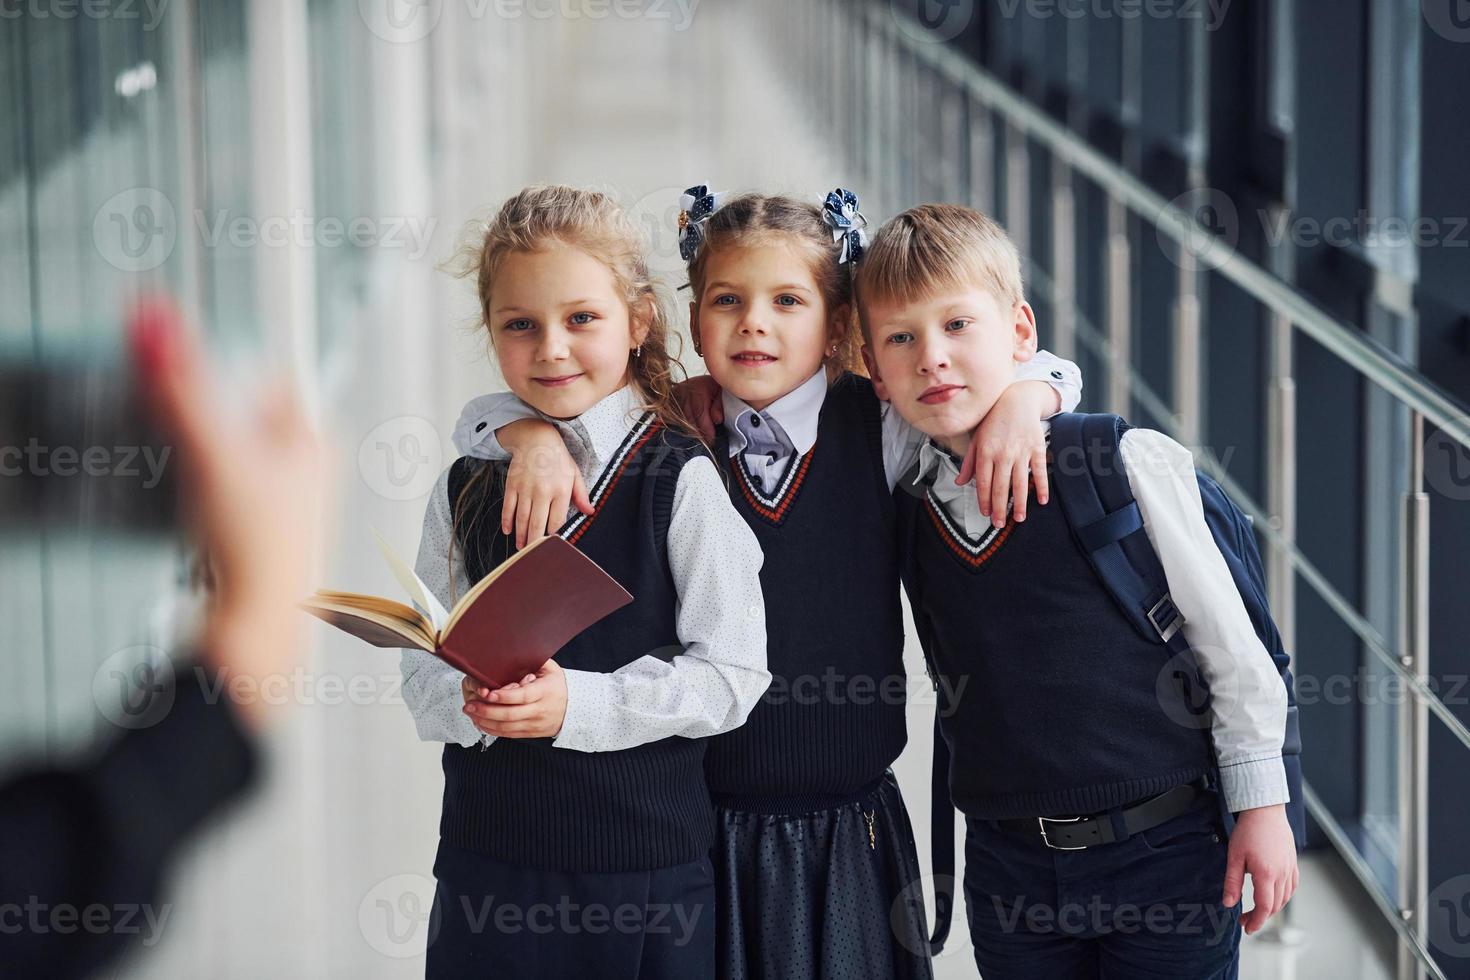 school- kinderen in uniform maken een foto samen in hal. opvatting van onderwijs